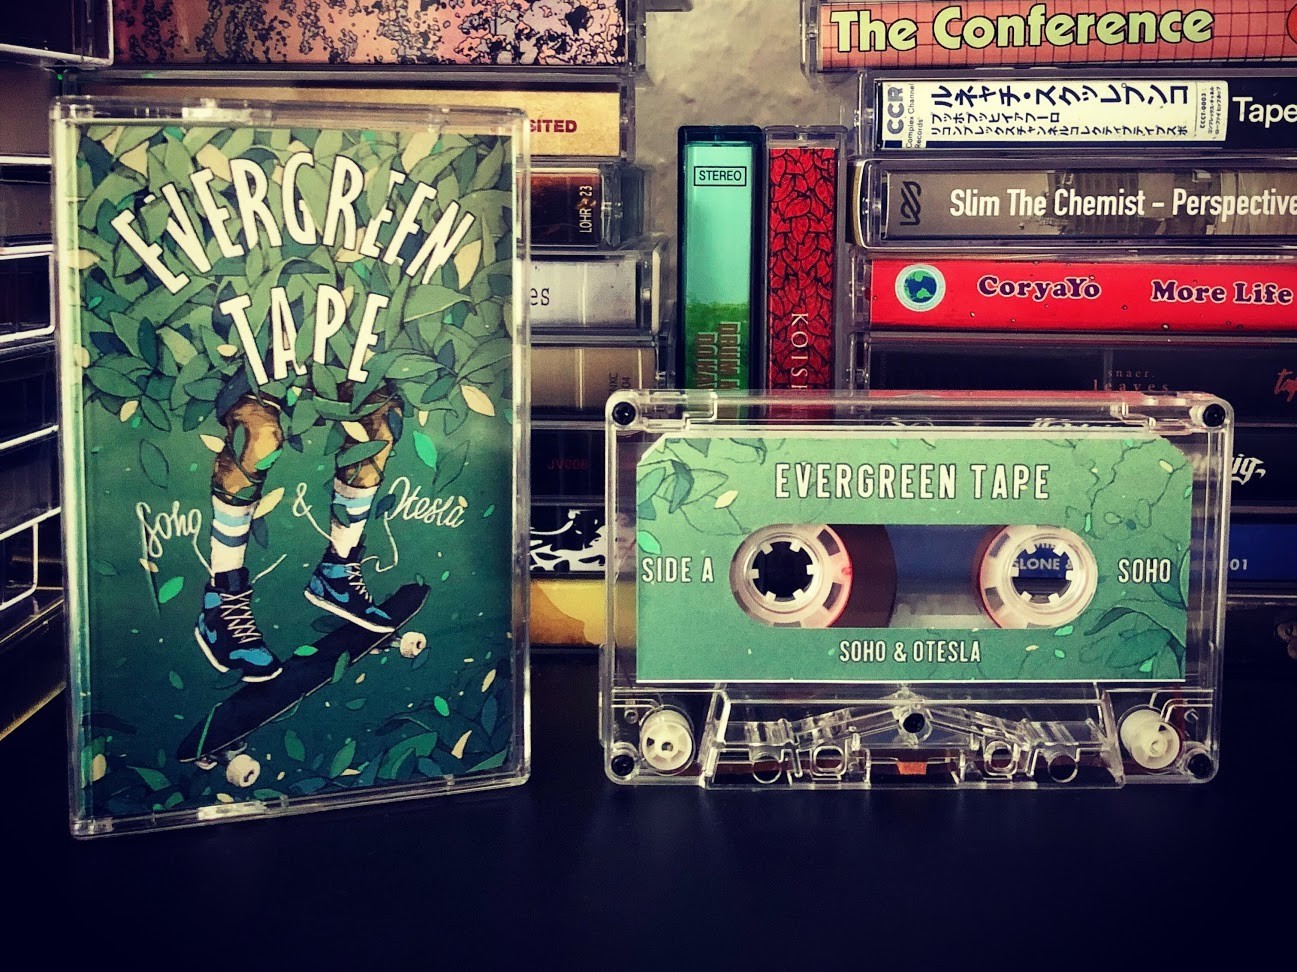 Soho x Otesla - Evergreen Tape